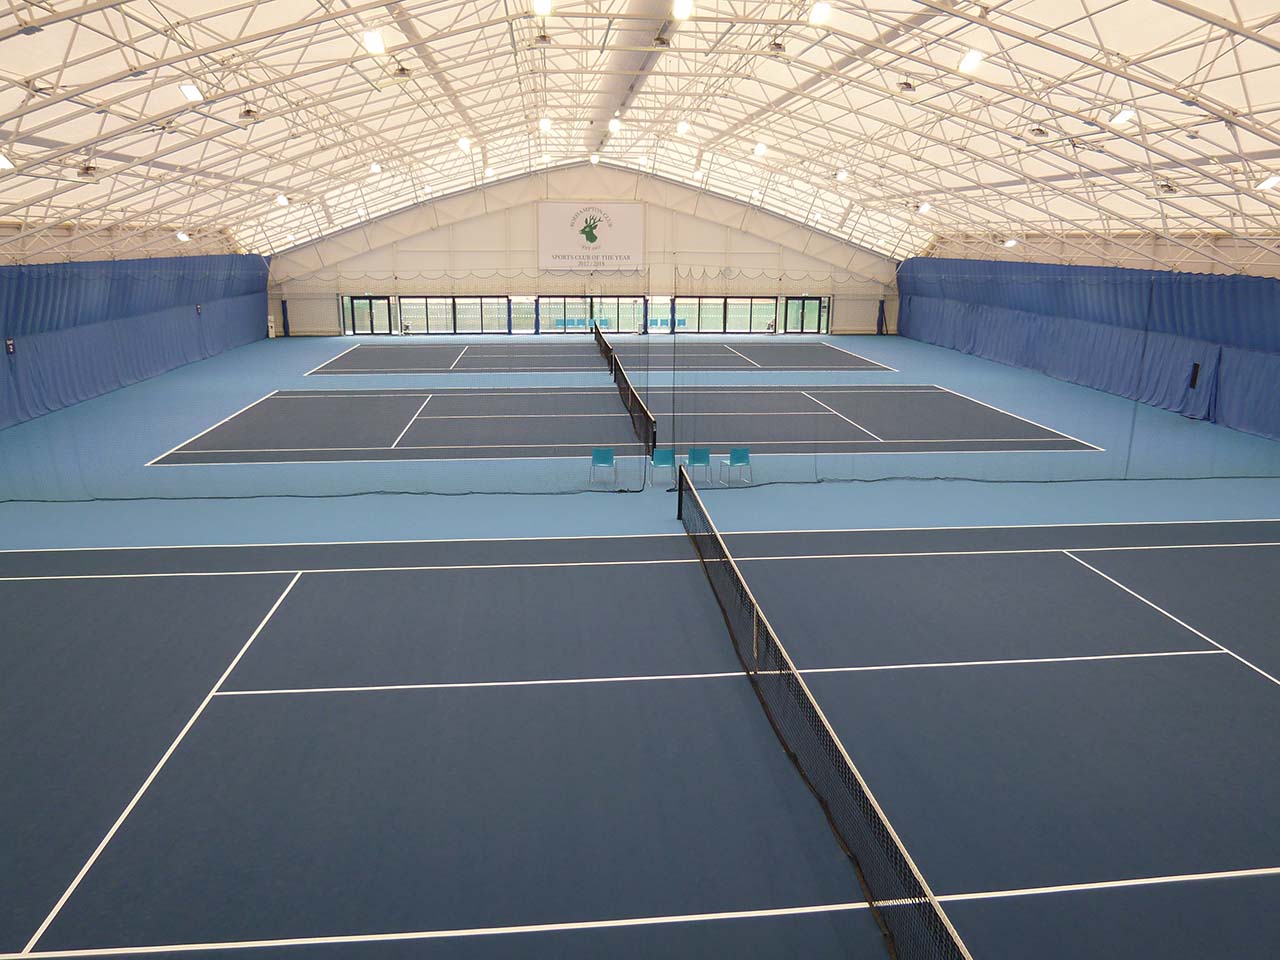 Roehampton Club - Indoor Tennis Centre